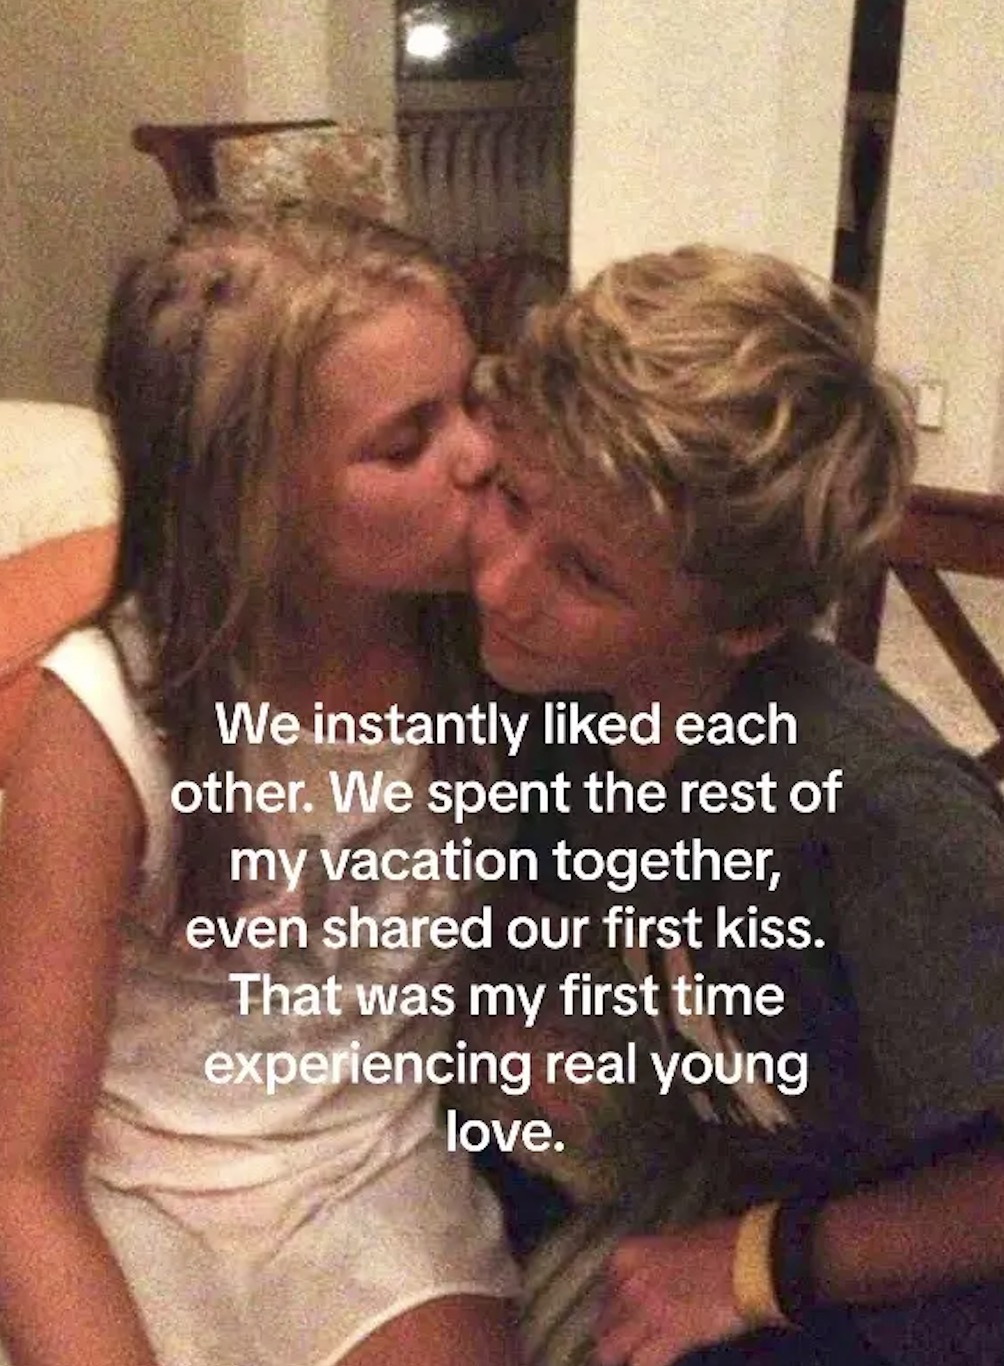 Sie hatten sofort eine Bindung zueinander und küssten sich sogar zum ersten Mal, bevor sie sich verabschiedeten